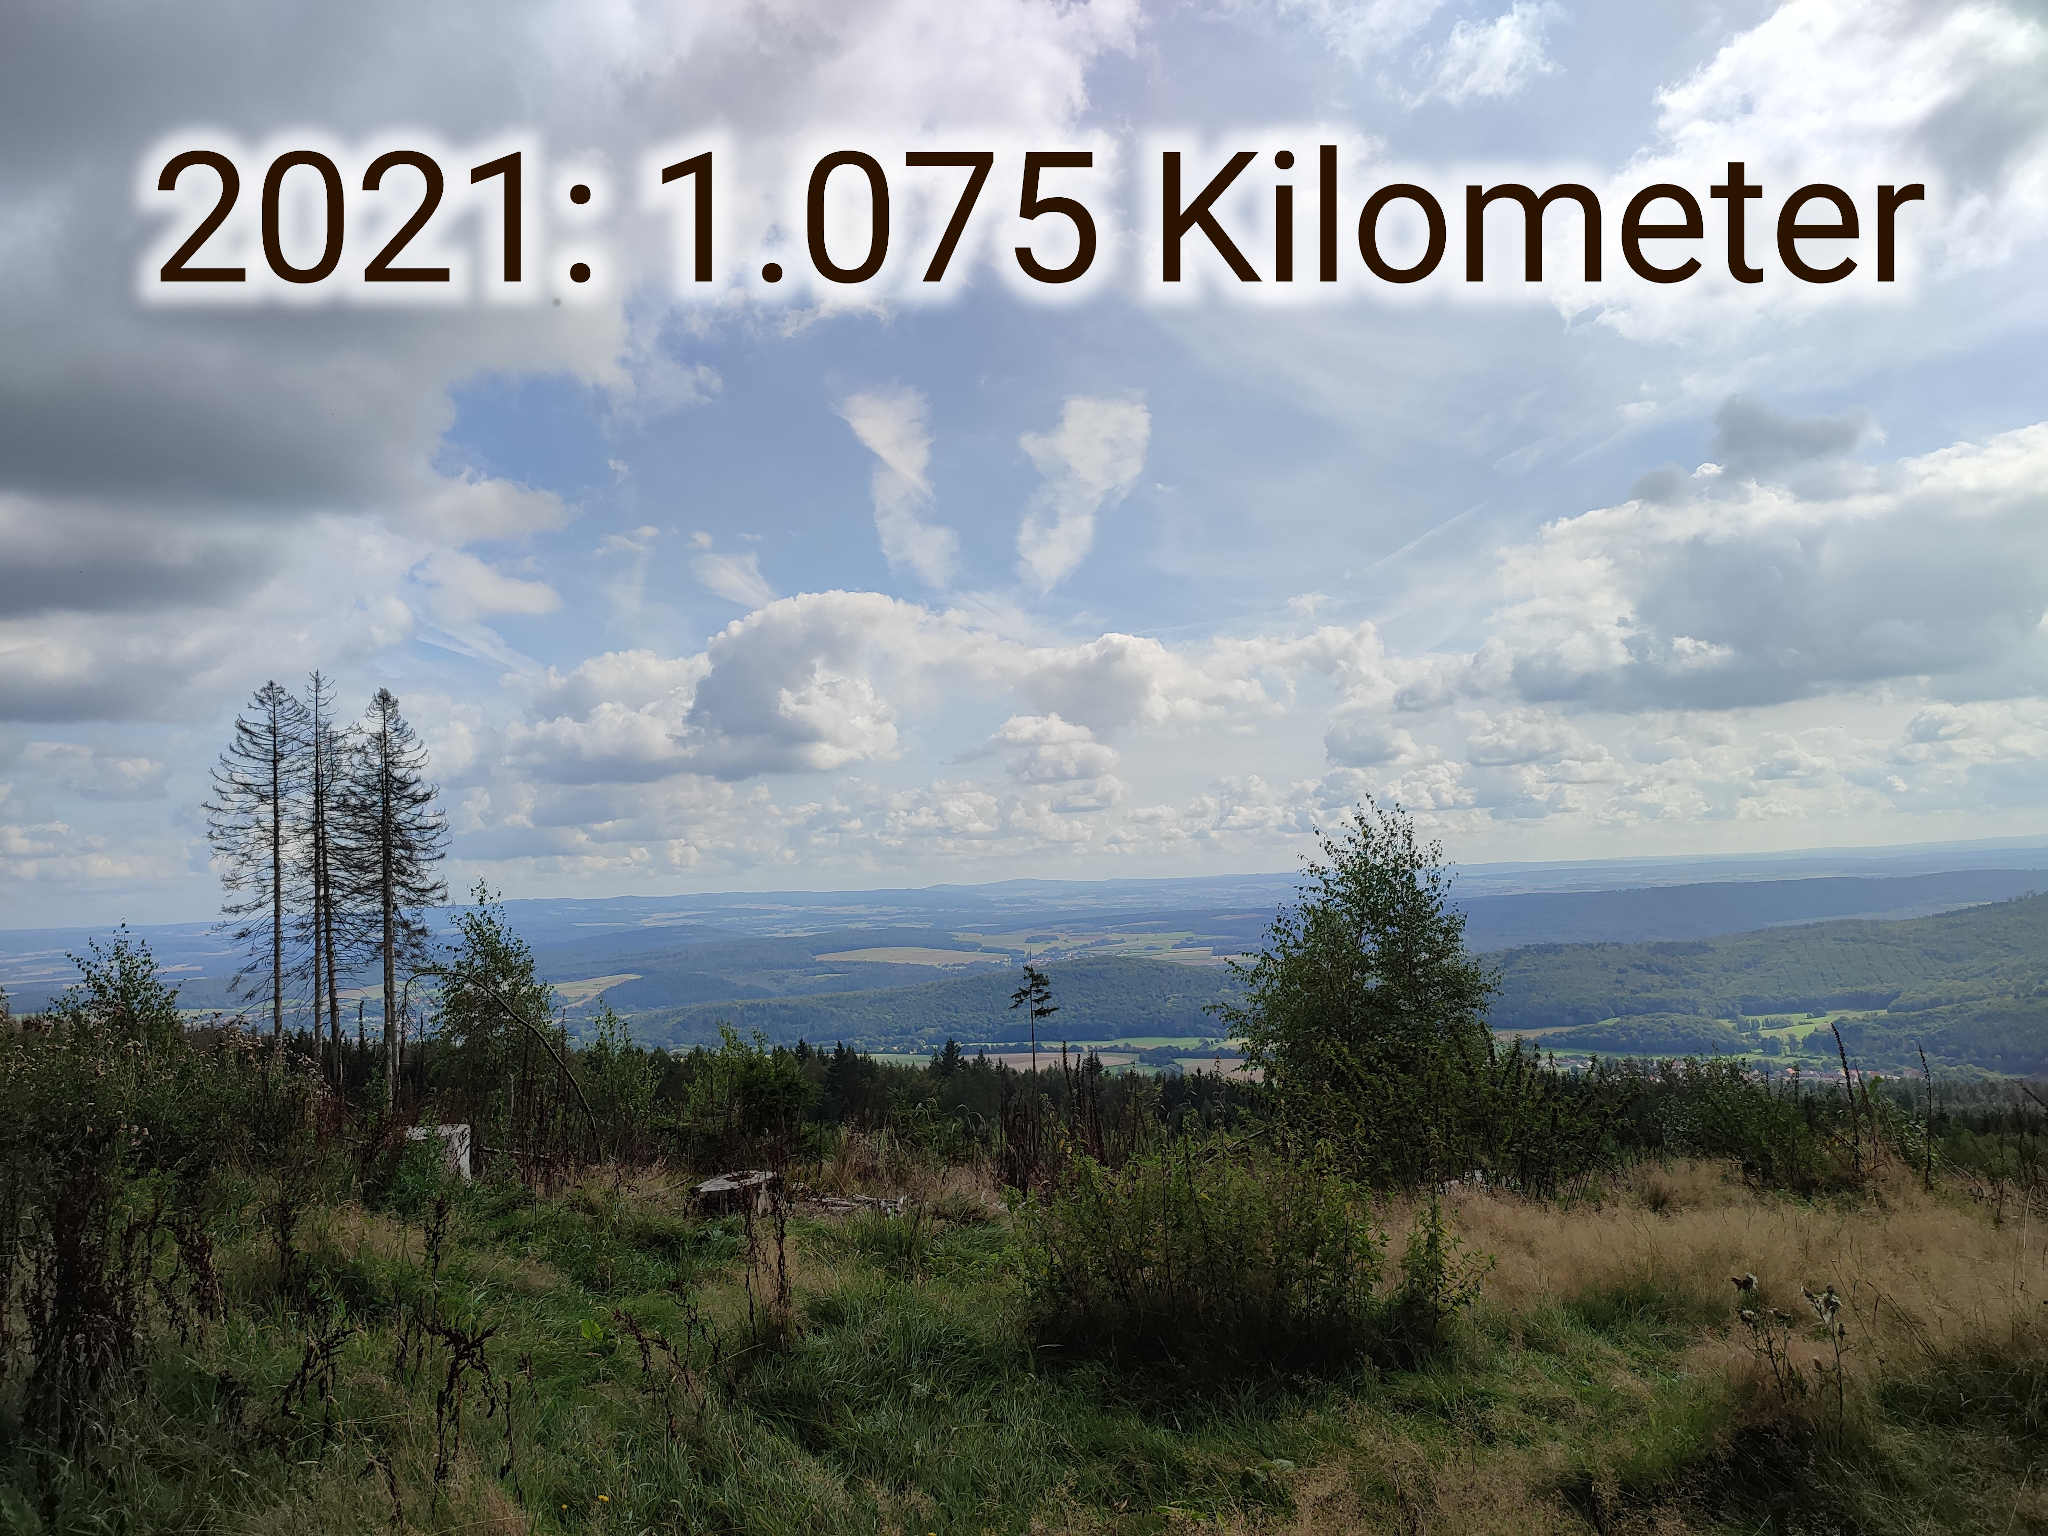 Blick über eine Waldlichtung, oben steht der Schriftzug "2021: 1075 Kilometer"